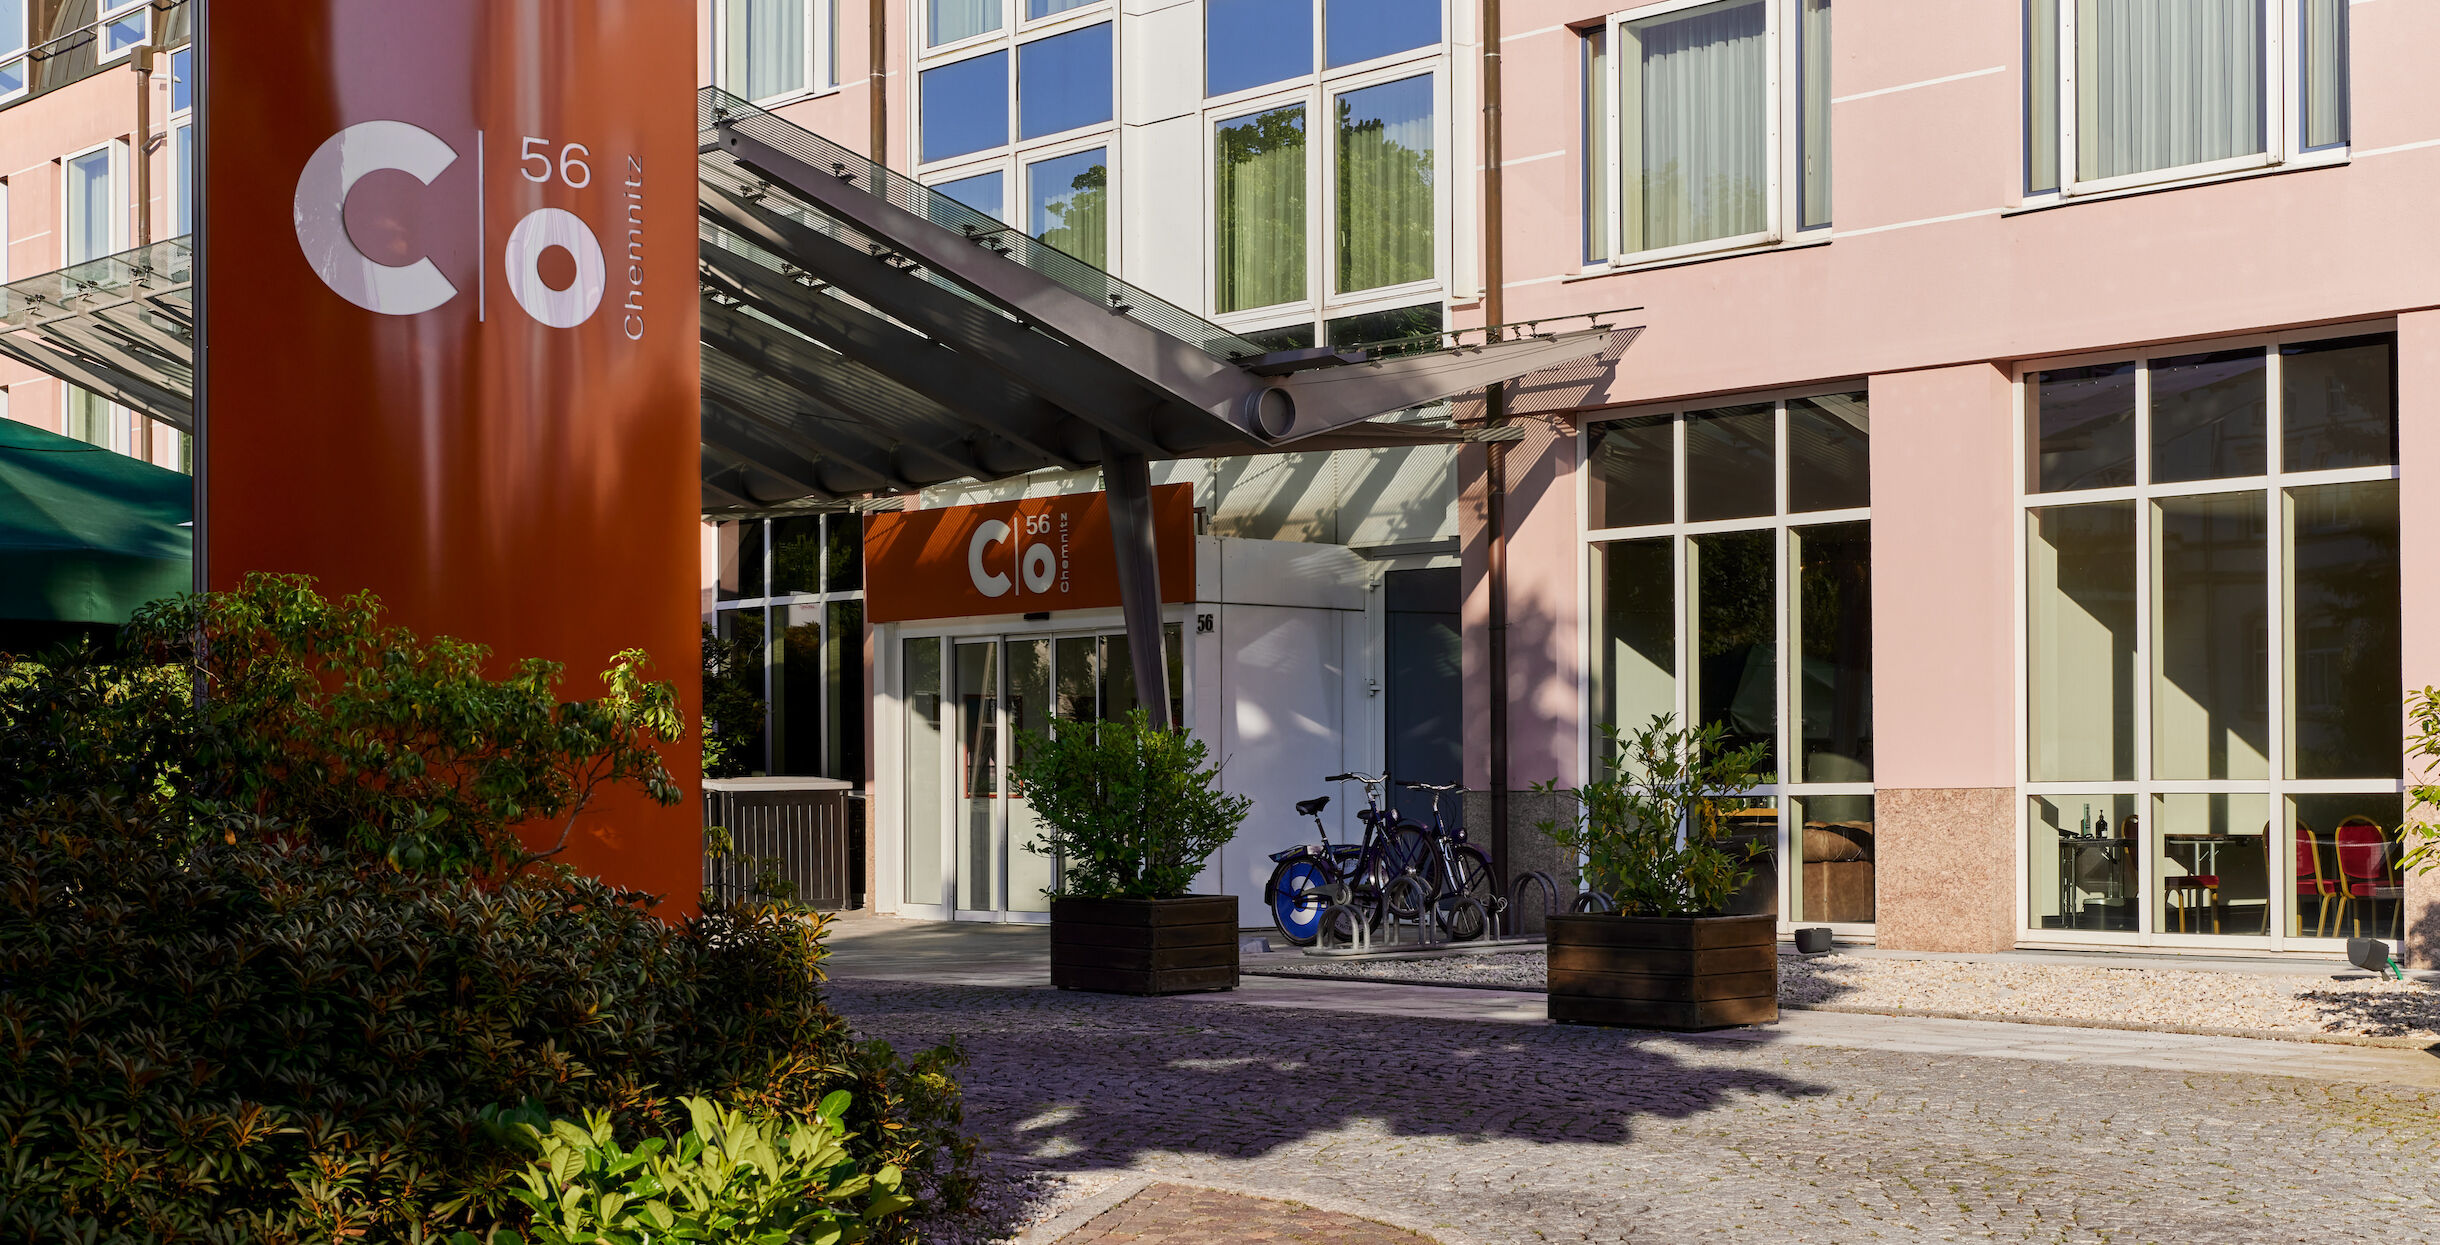 Eingang von hotel chemnitz co56